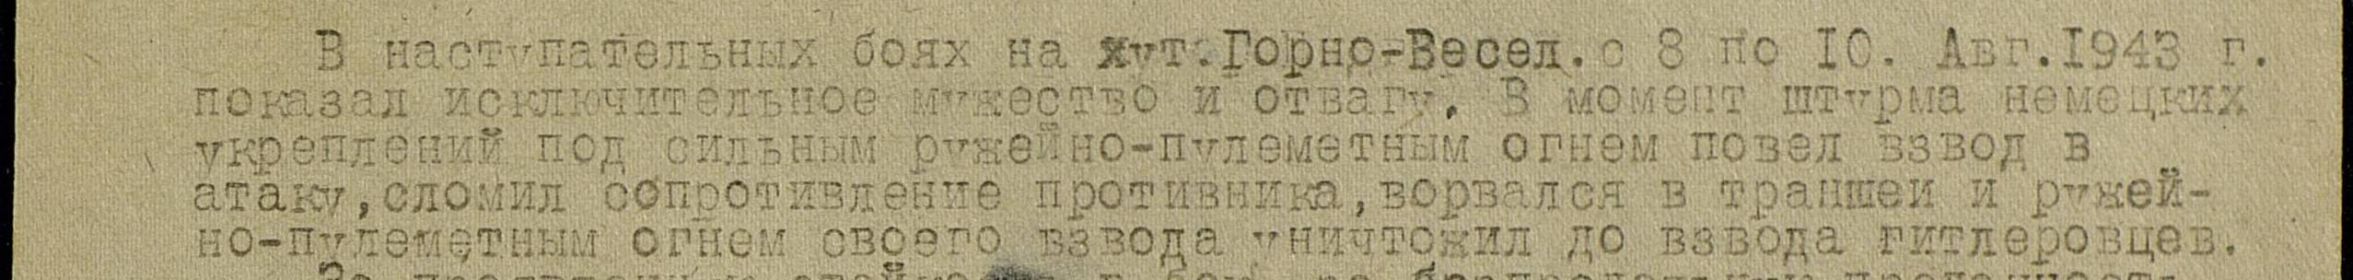 Выписка из приказа по 56 армии,о награждении 09.09.1943г.